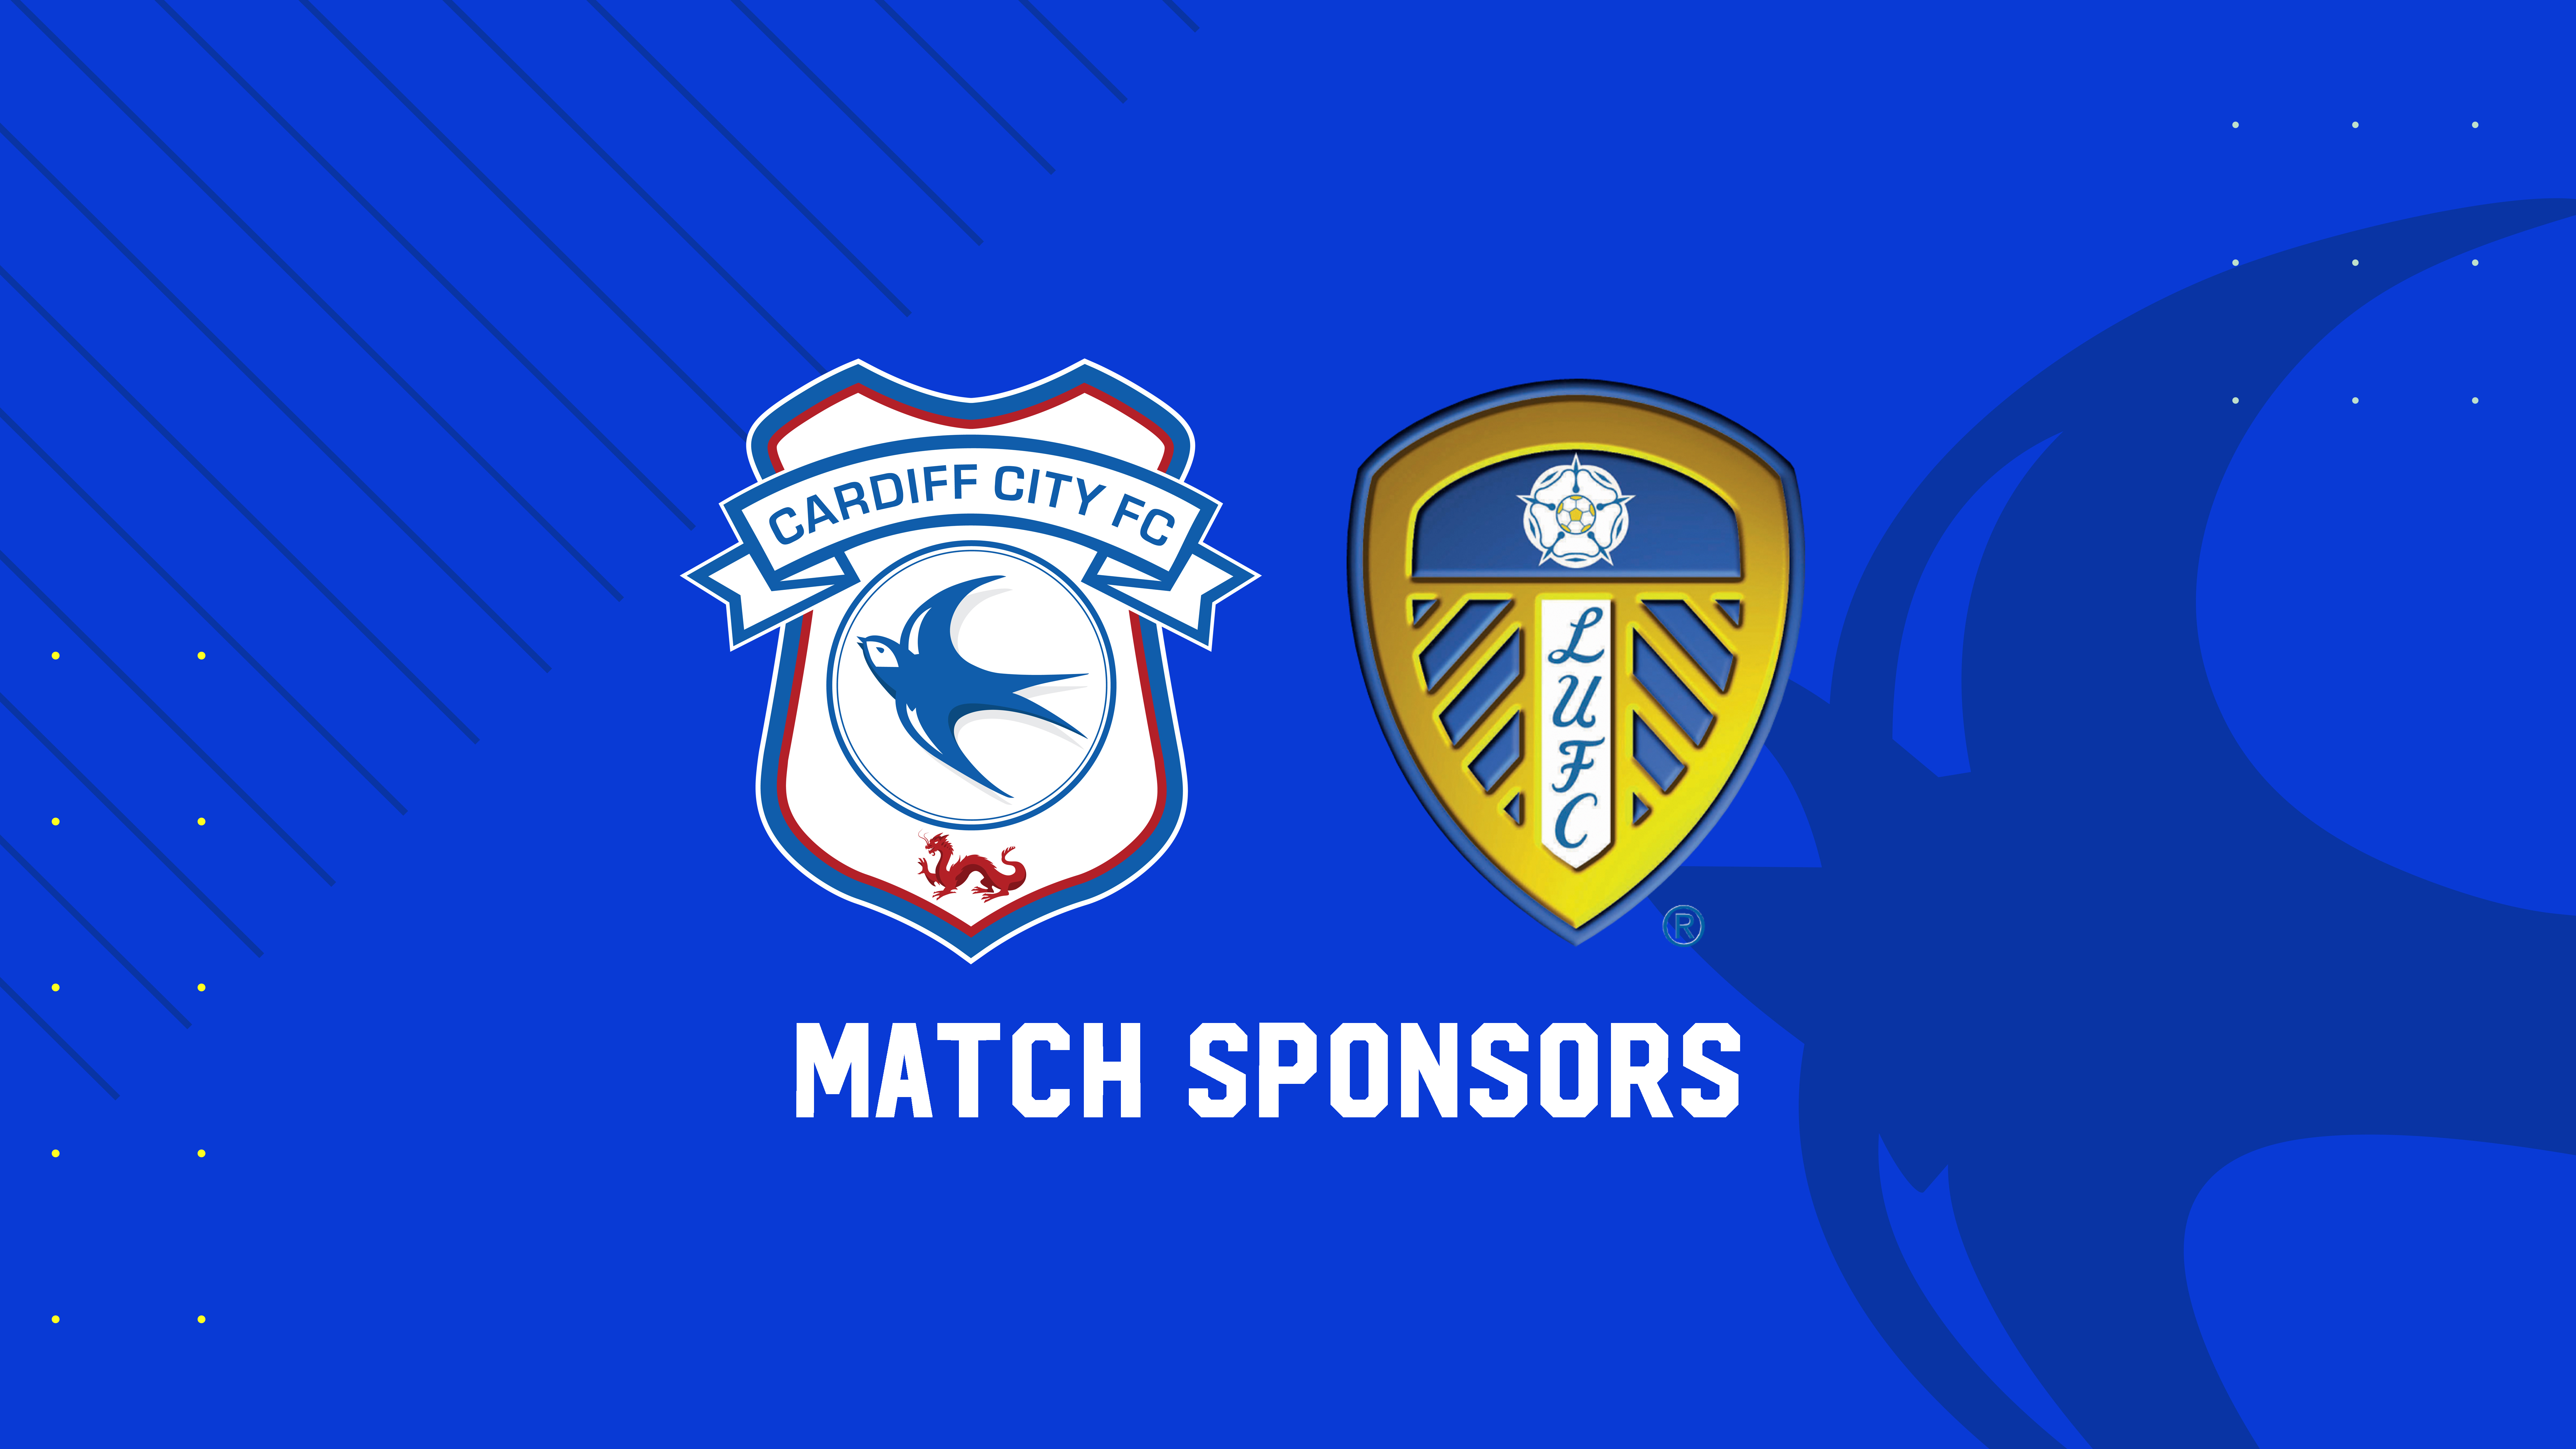 Match Sponsors | Cardiff City vs. Leeds United